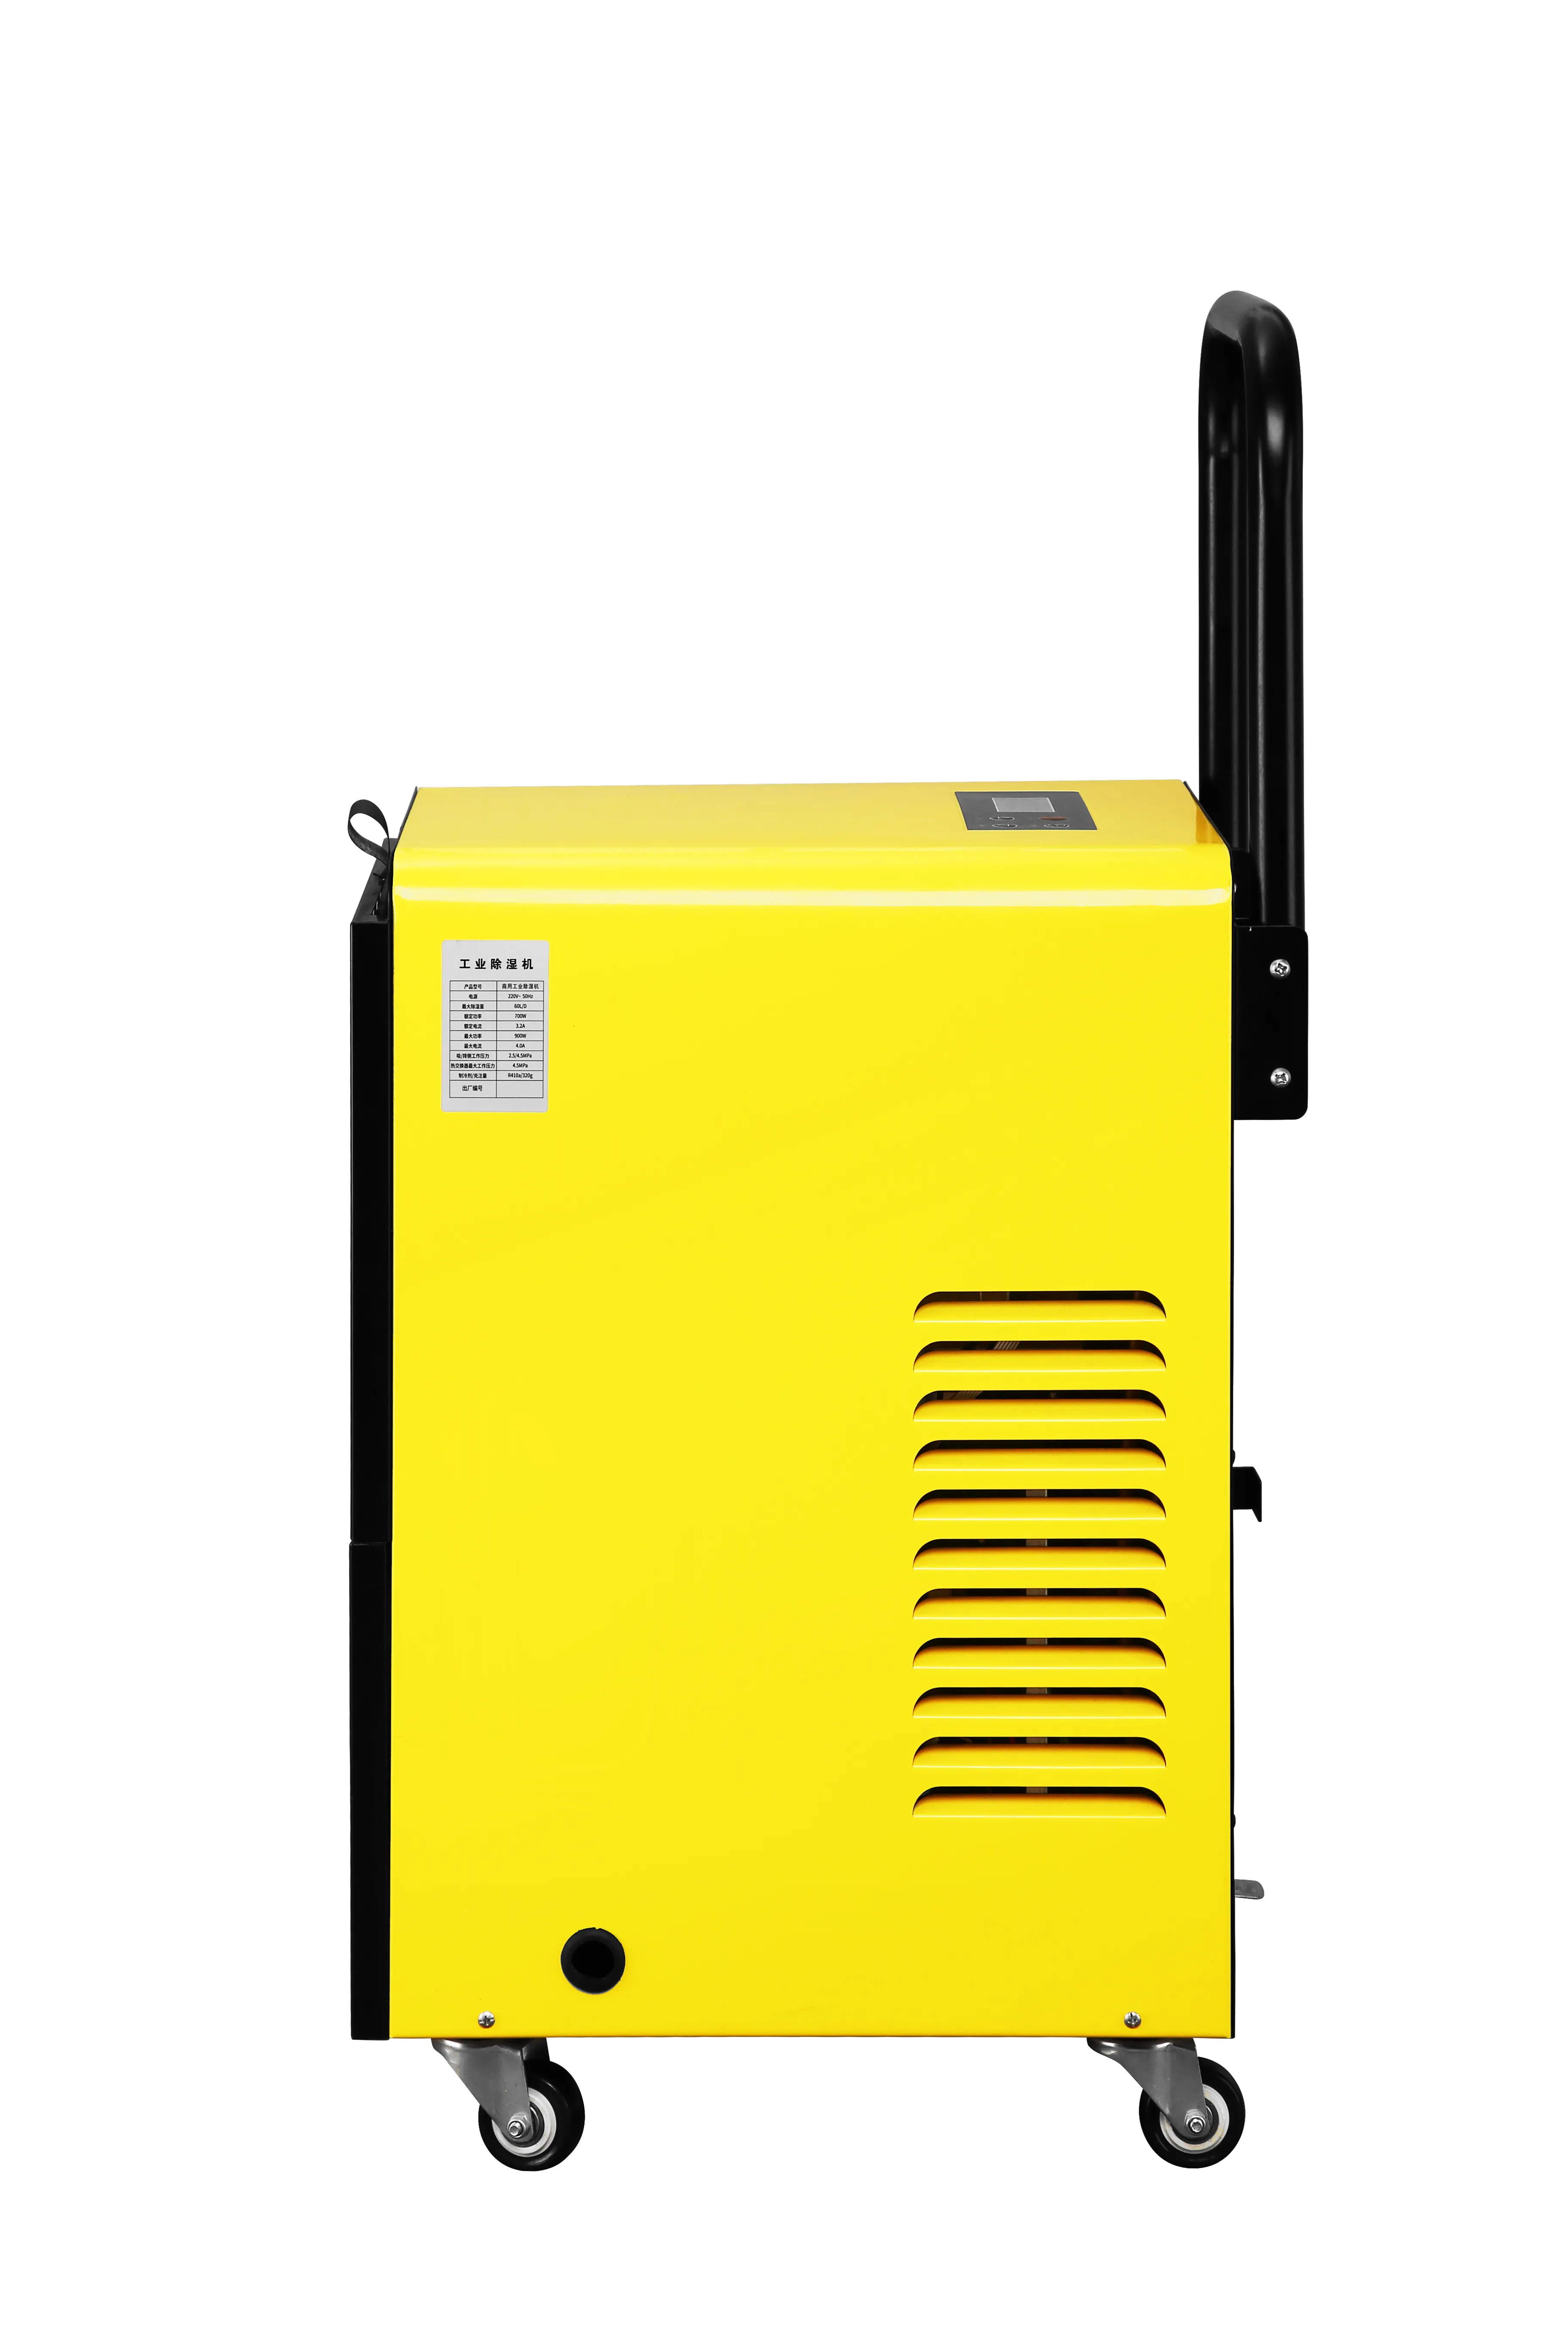 Removedor de umidade de ar portátil compacto 50L, purificador de ar industrial, dessecante e desumidificador, com efeito de estufa comercial doméstico